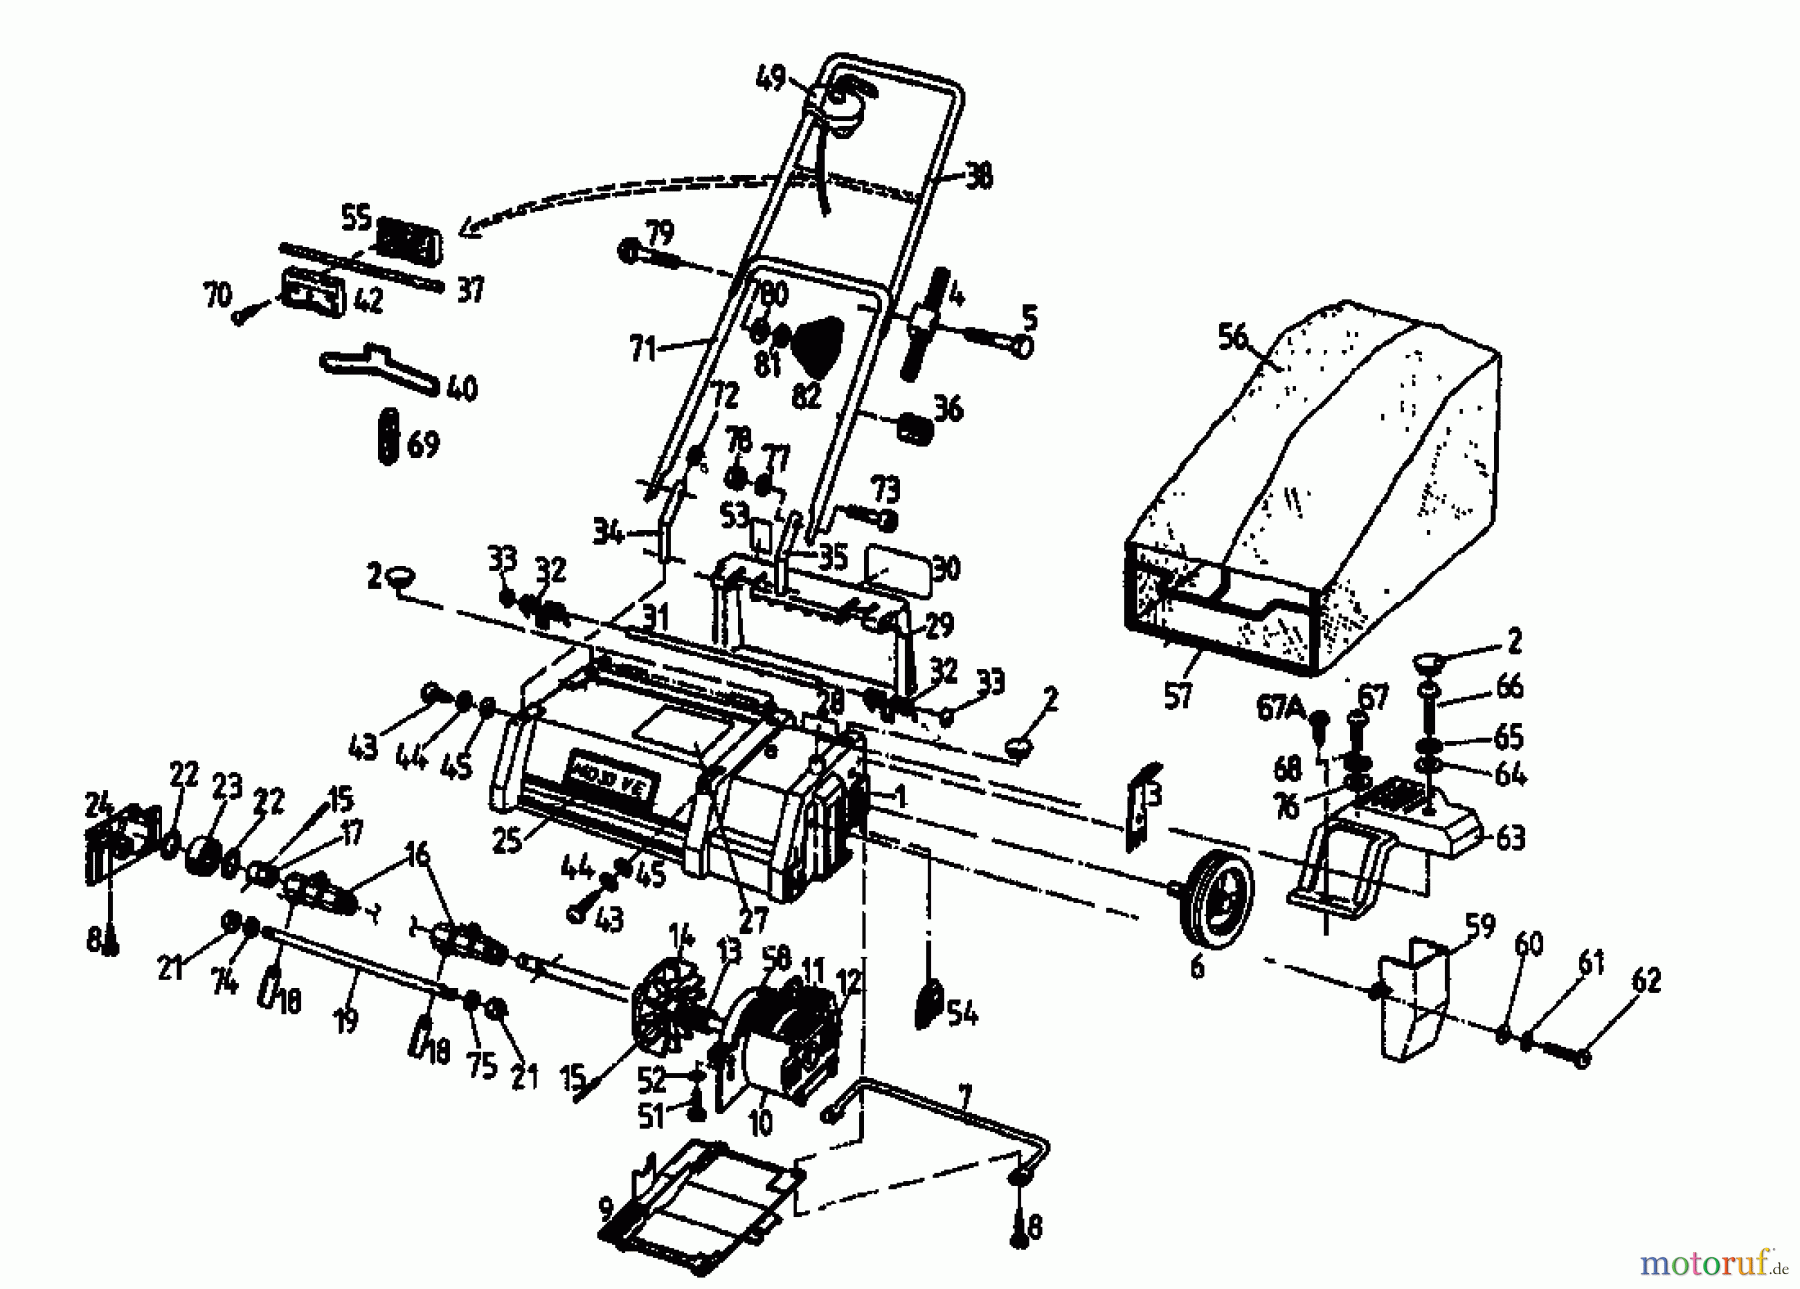  Ghd Electric verticutter MD 33 VE 04053.01  (1996) Basic machine